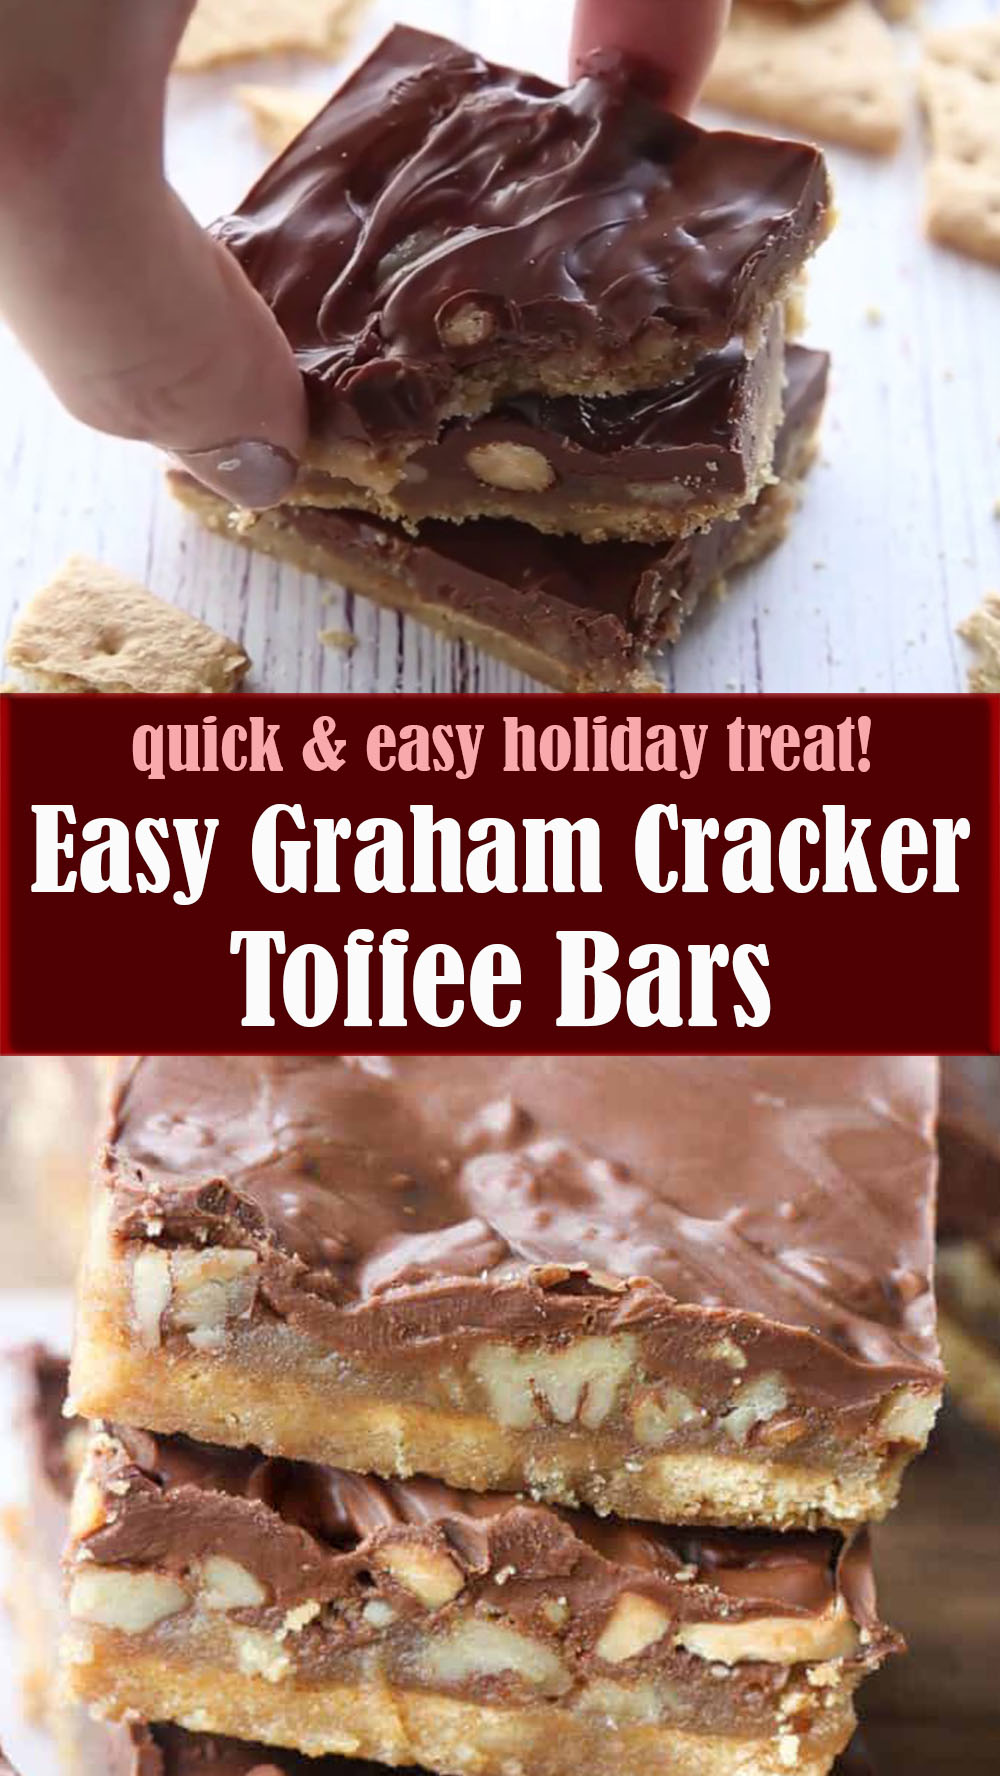 Easy Graham Cracker Toffee Bars
